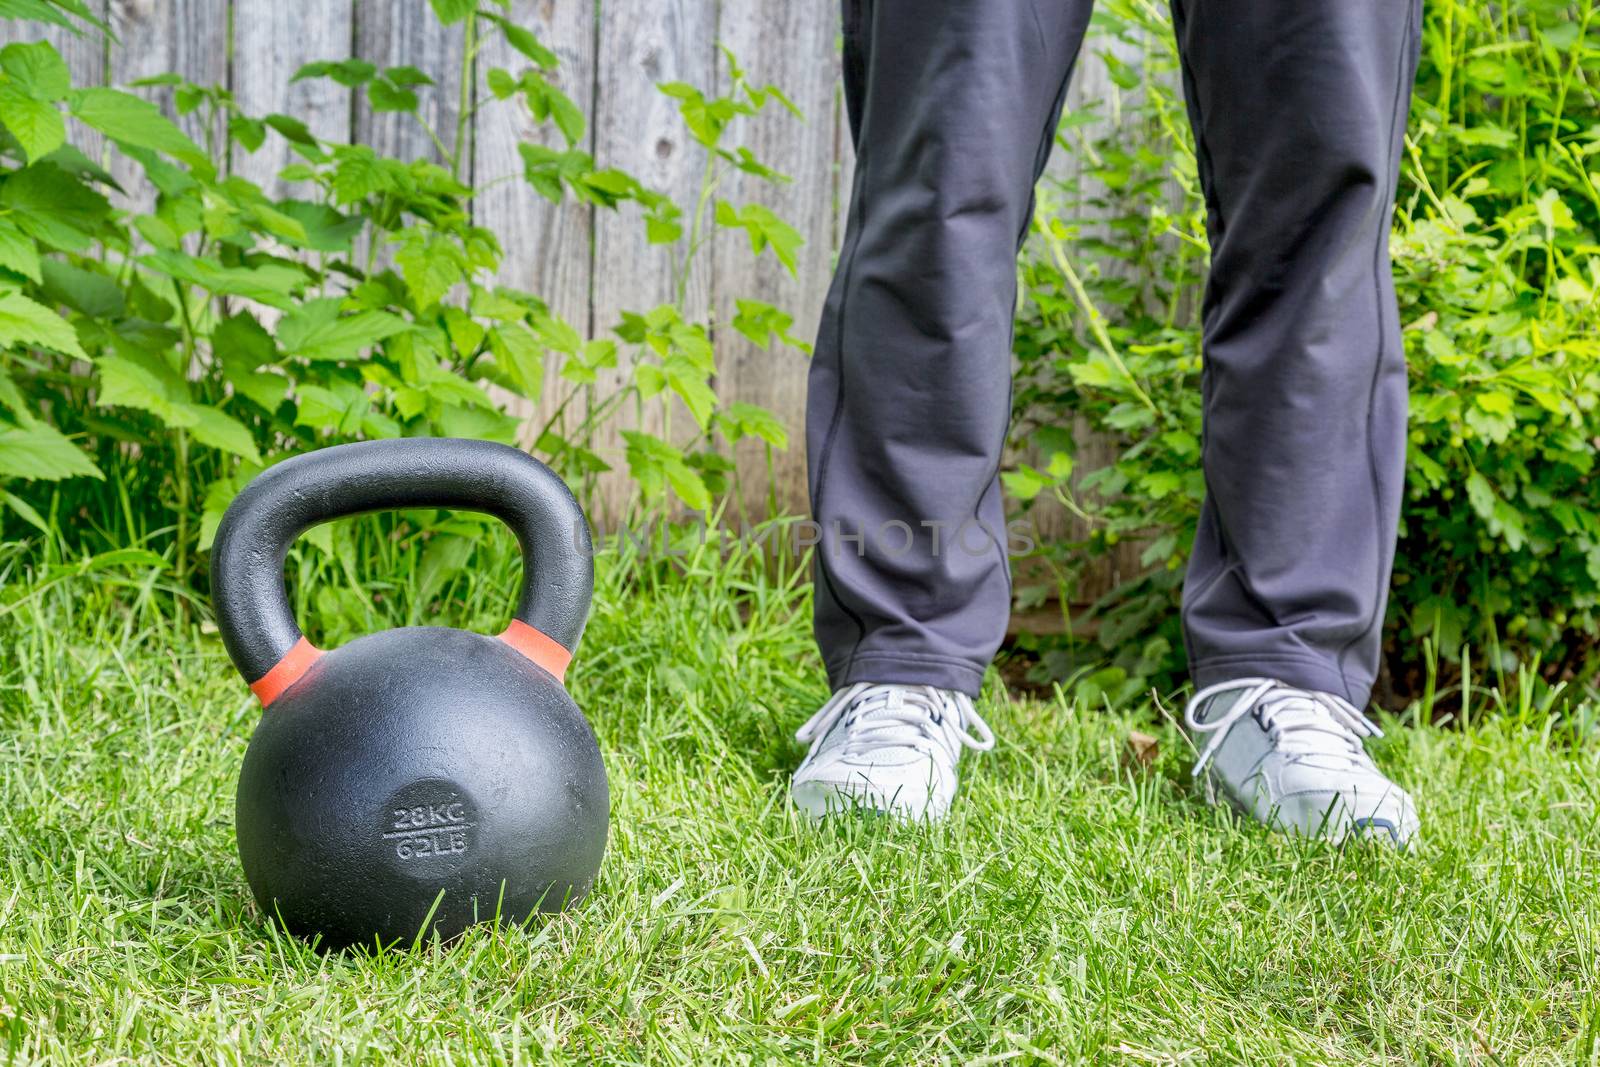 kettlebell workout in backyard by PixelsAway